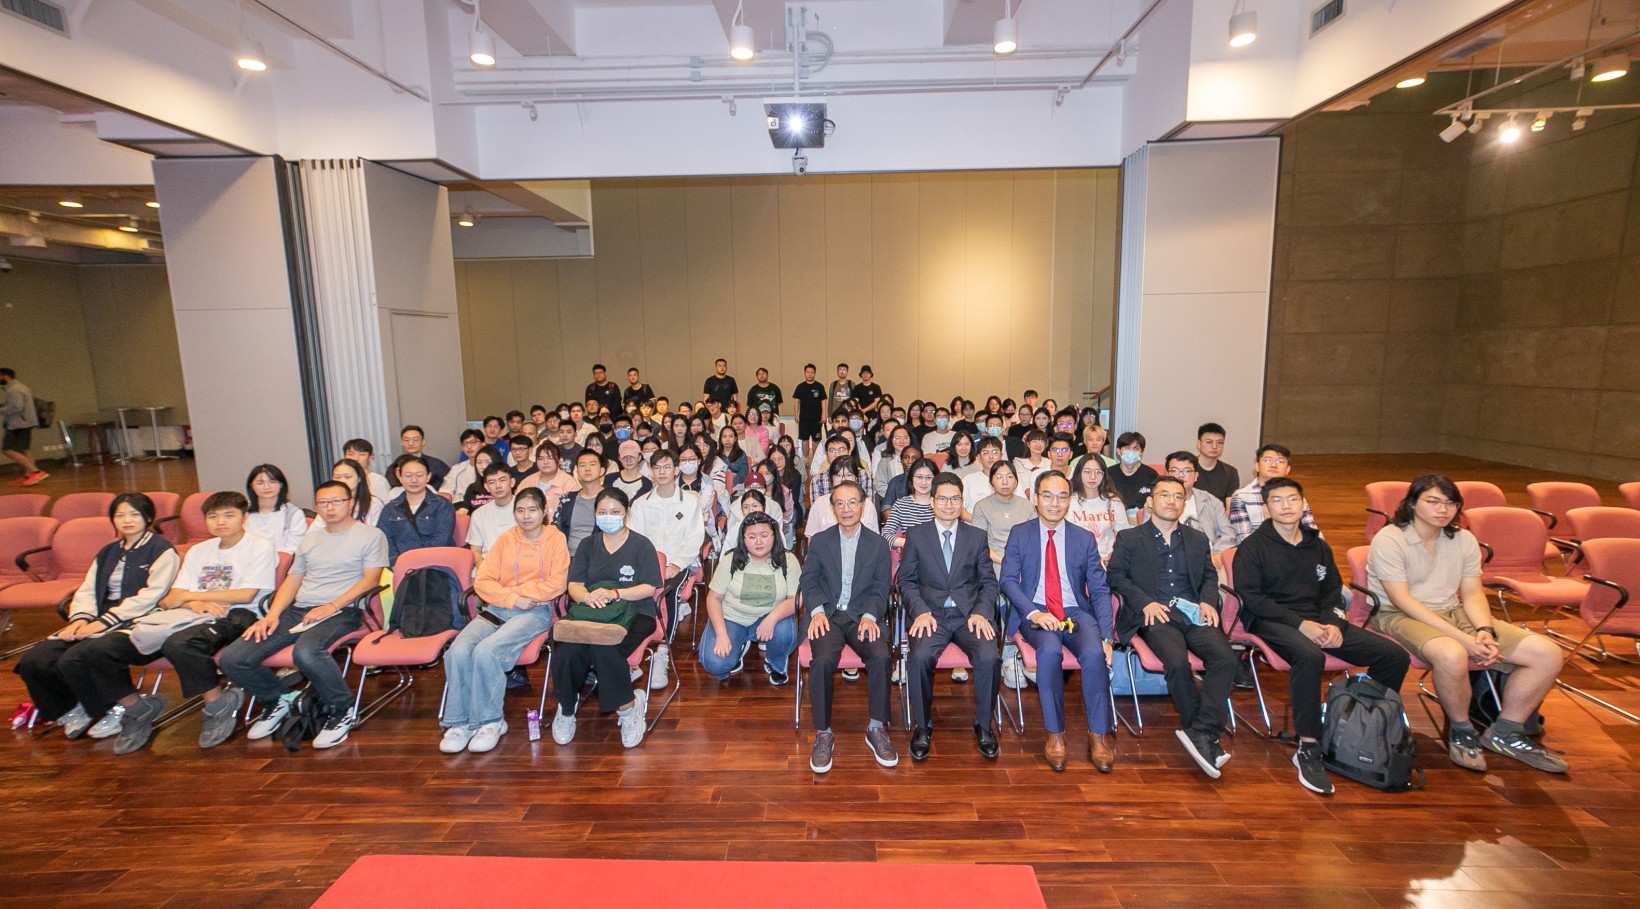 财经事务及库务局副局长陈浩濂与学生分享香港金融最新发展。